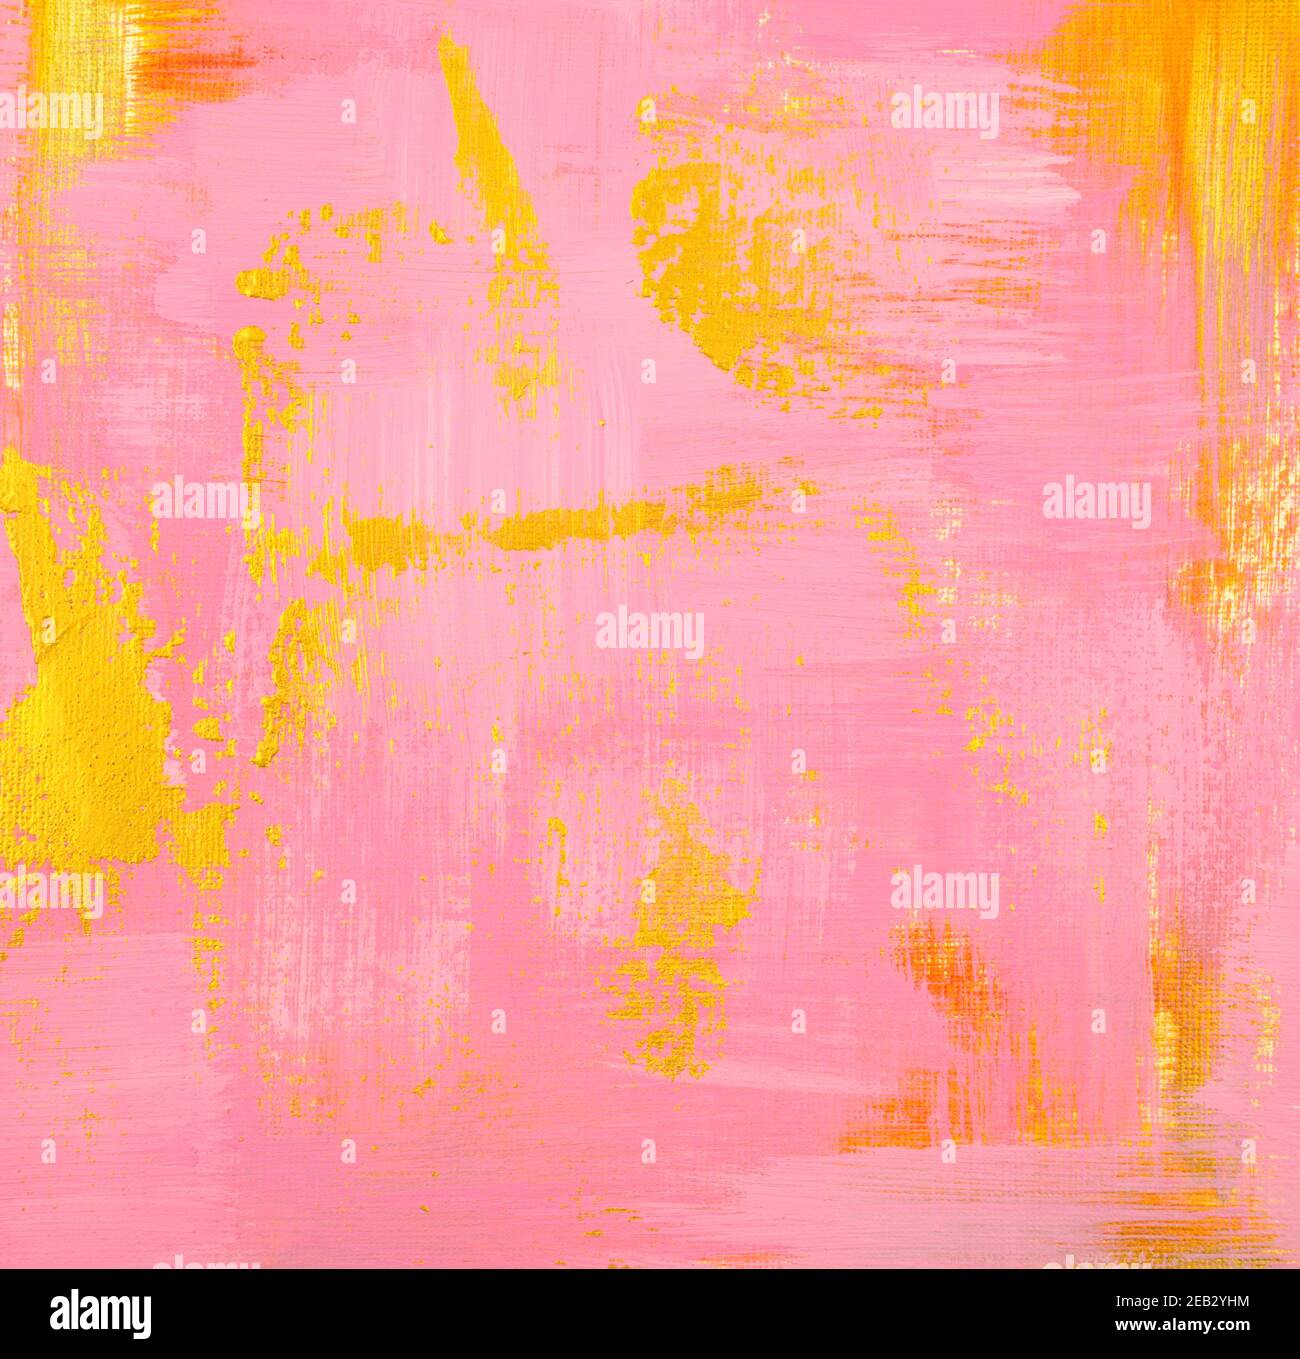 Elemento pastello dorato e rosa pittura acrilica su tela opaca trama astratta sfondo. Fatto a mano, disegnato a mano. Stile immagine verticale. Foto Stock